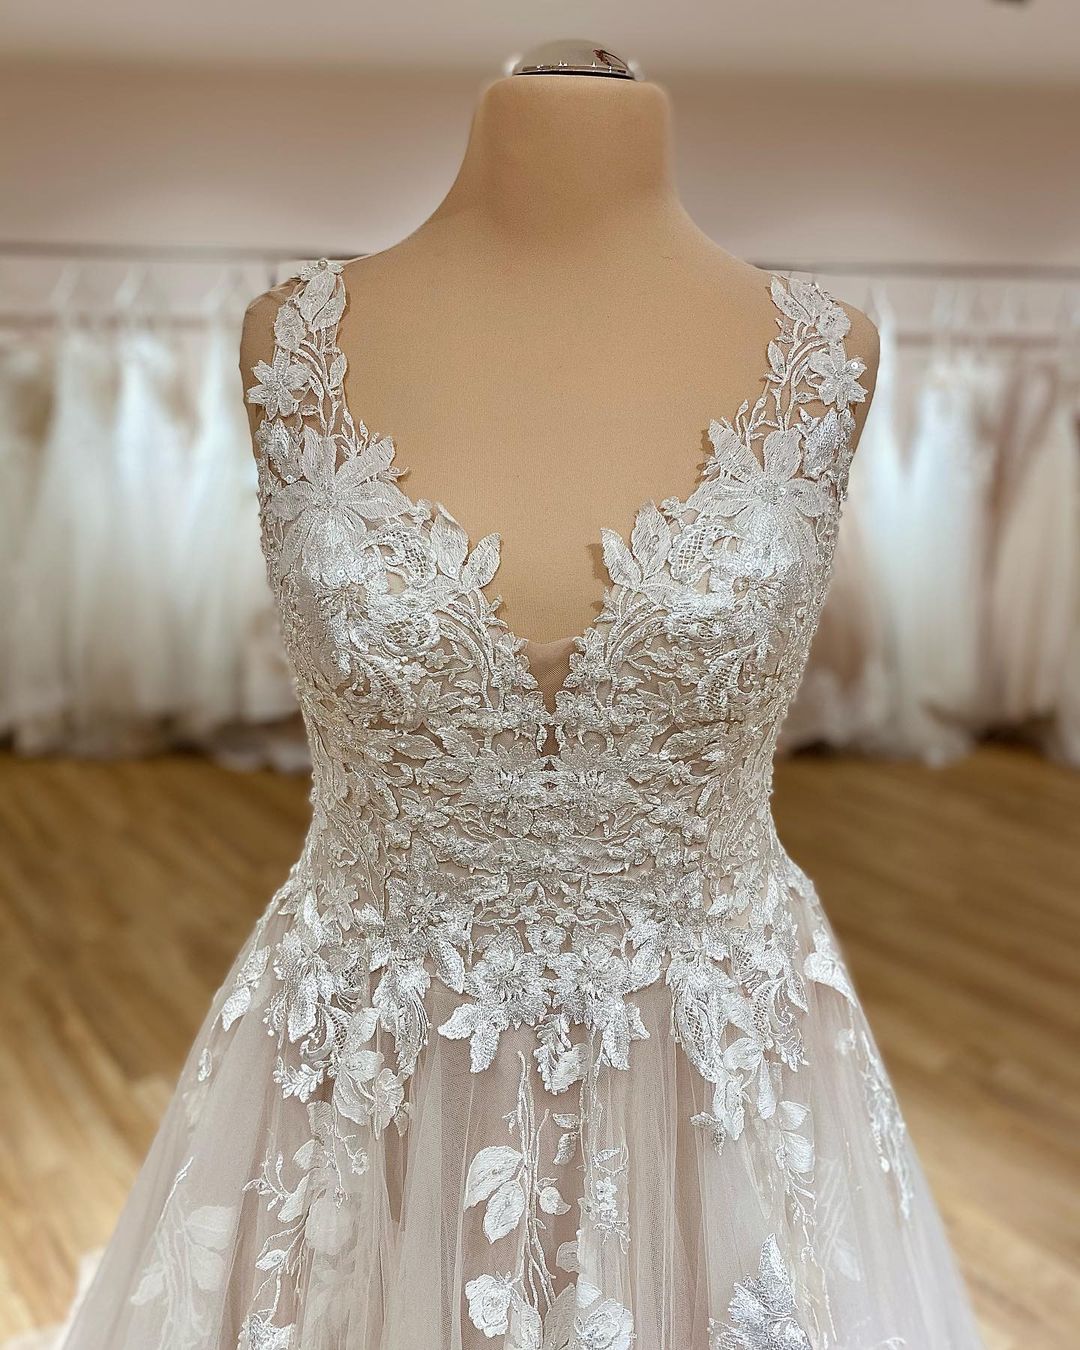 Finden Sie Schlichtes Brautkleid V Ausschnitt online bei babyonlinedress.de. Hochzeitskleider Spitze maßgeschneidet online kaufen.